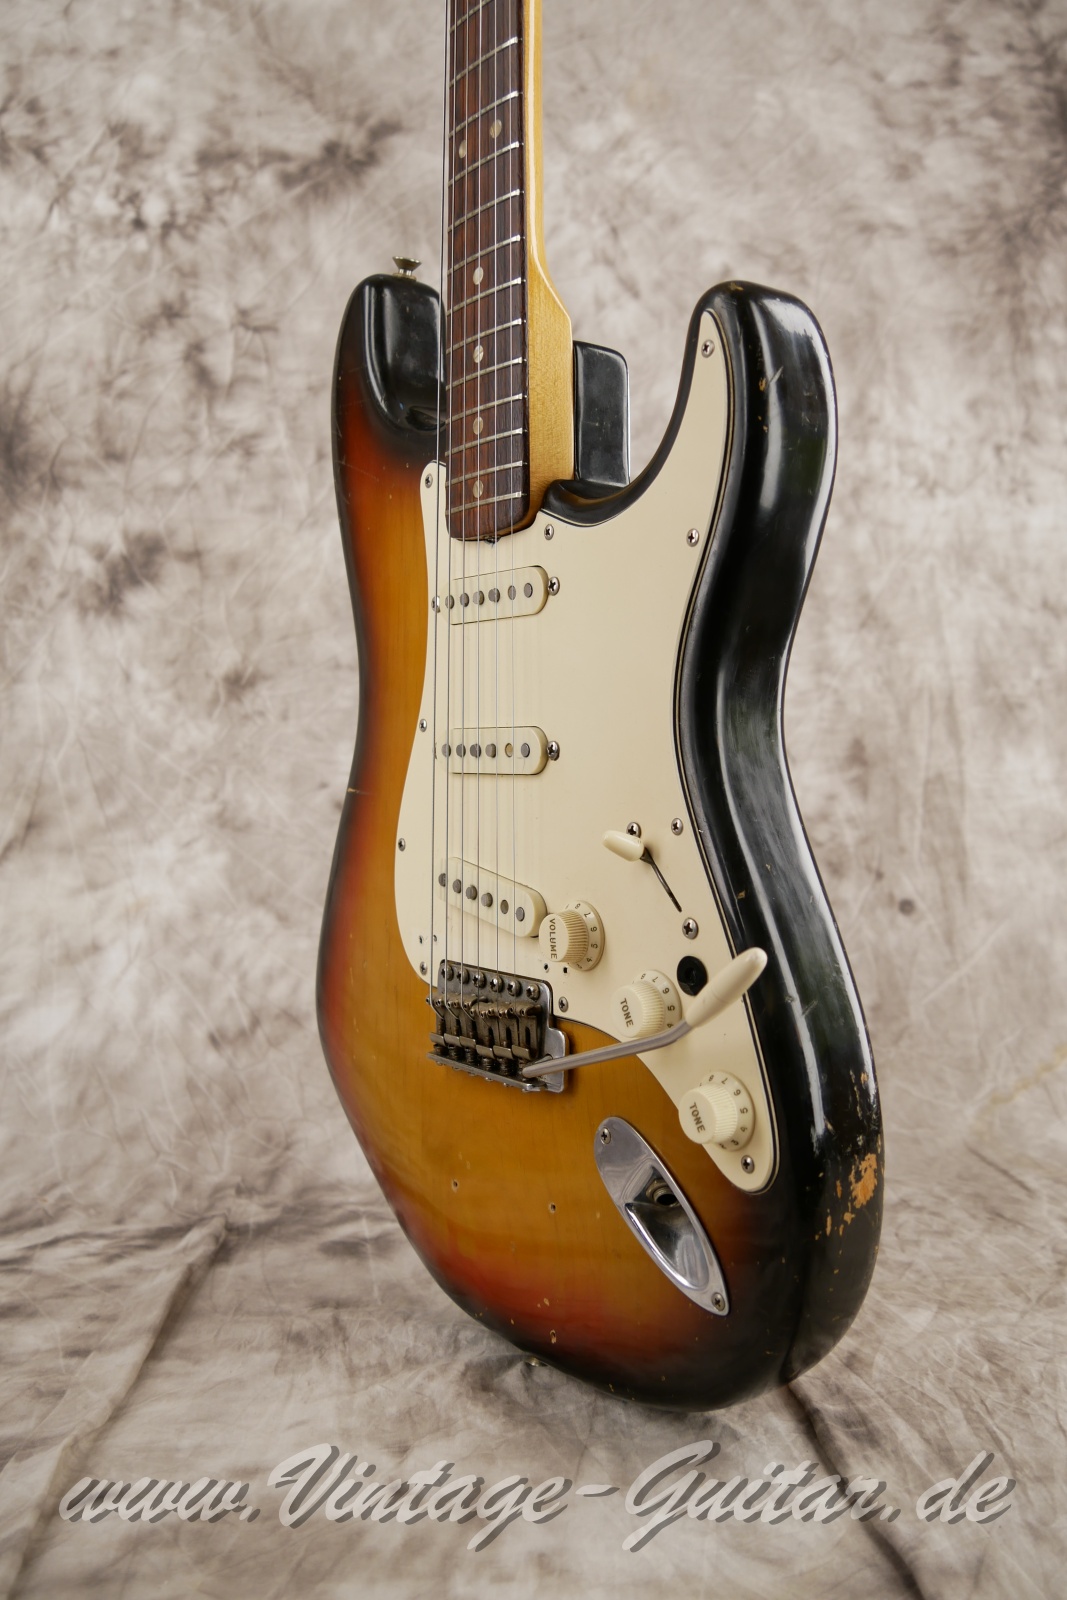 Fender_Stratocaster_sunburst_4hole_1971-010.JPG